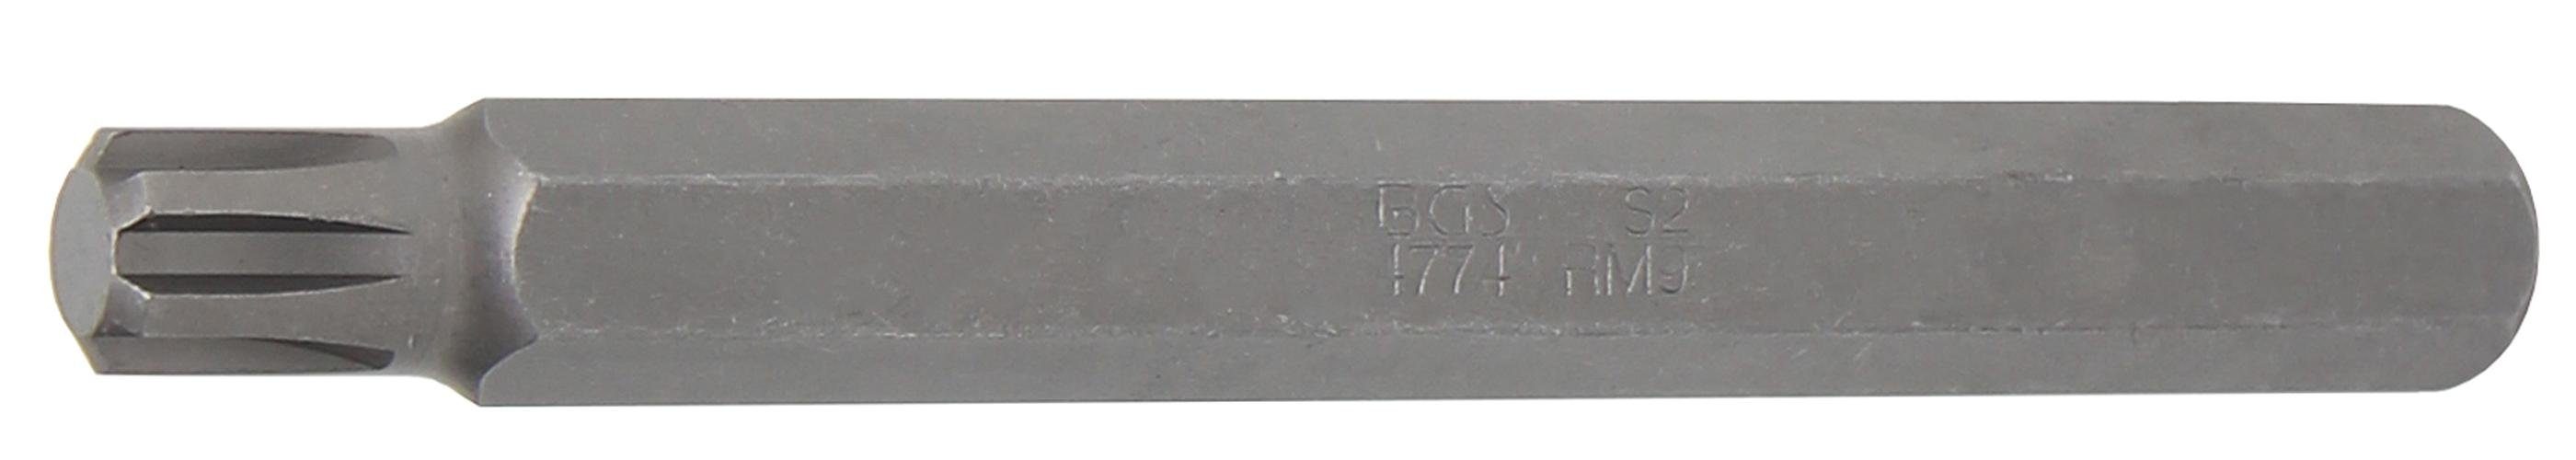 BGS technic Bit-Schraubendreher Bit, Länge 100 mm, Antrieb Außensechskant 10 mm (3/8), Keil-Profil (für RIBE) M9